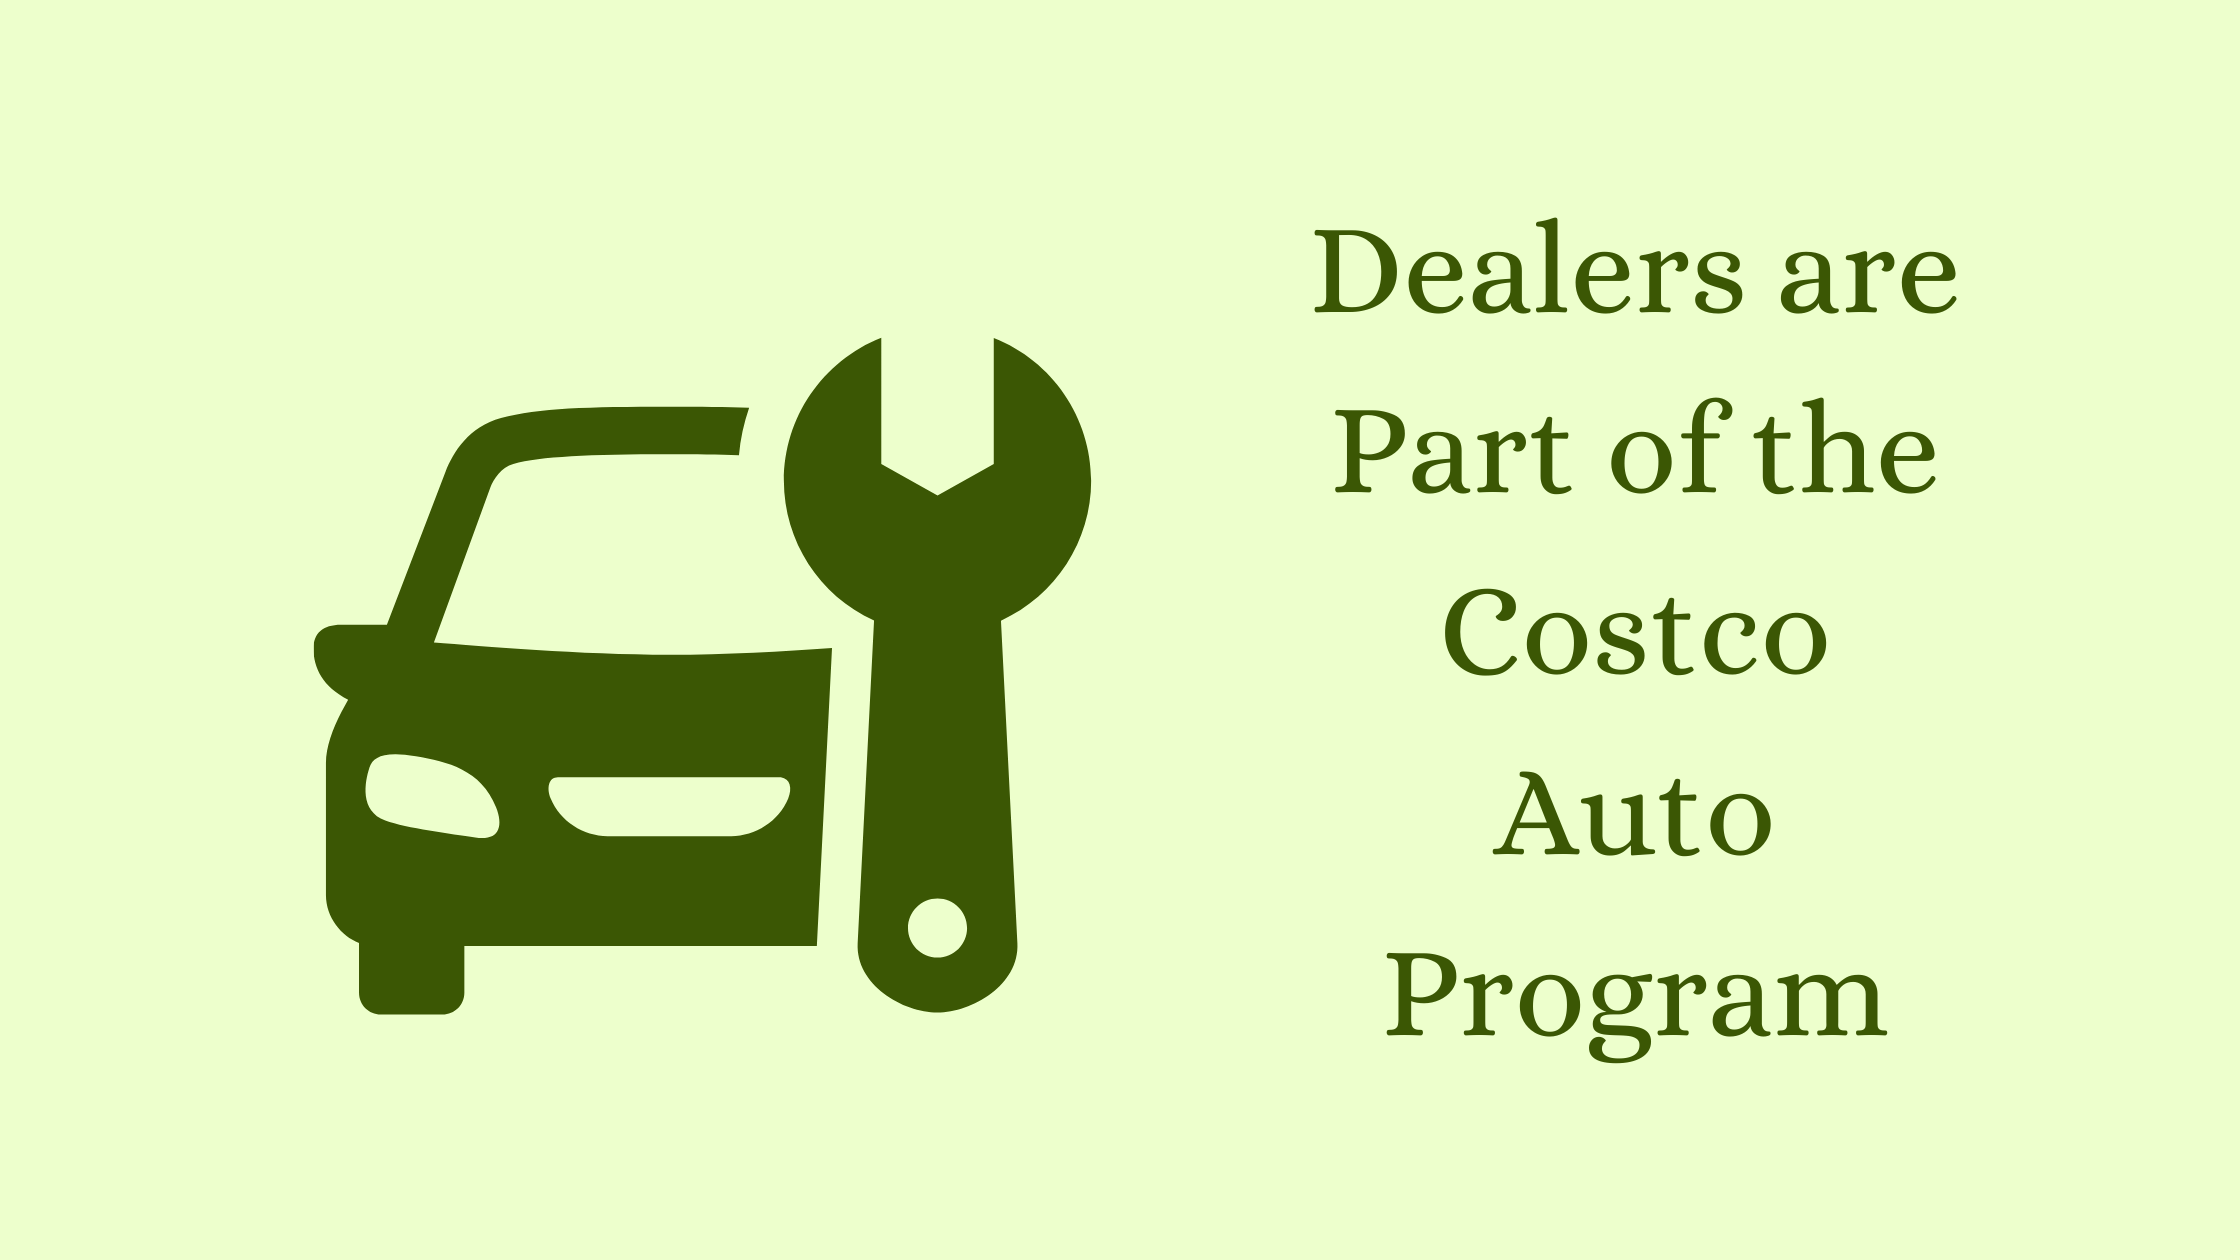 Costco Auto programDealers are Part of the Costco Auto Program